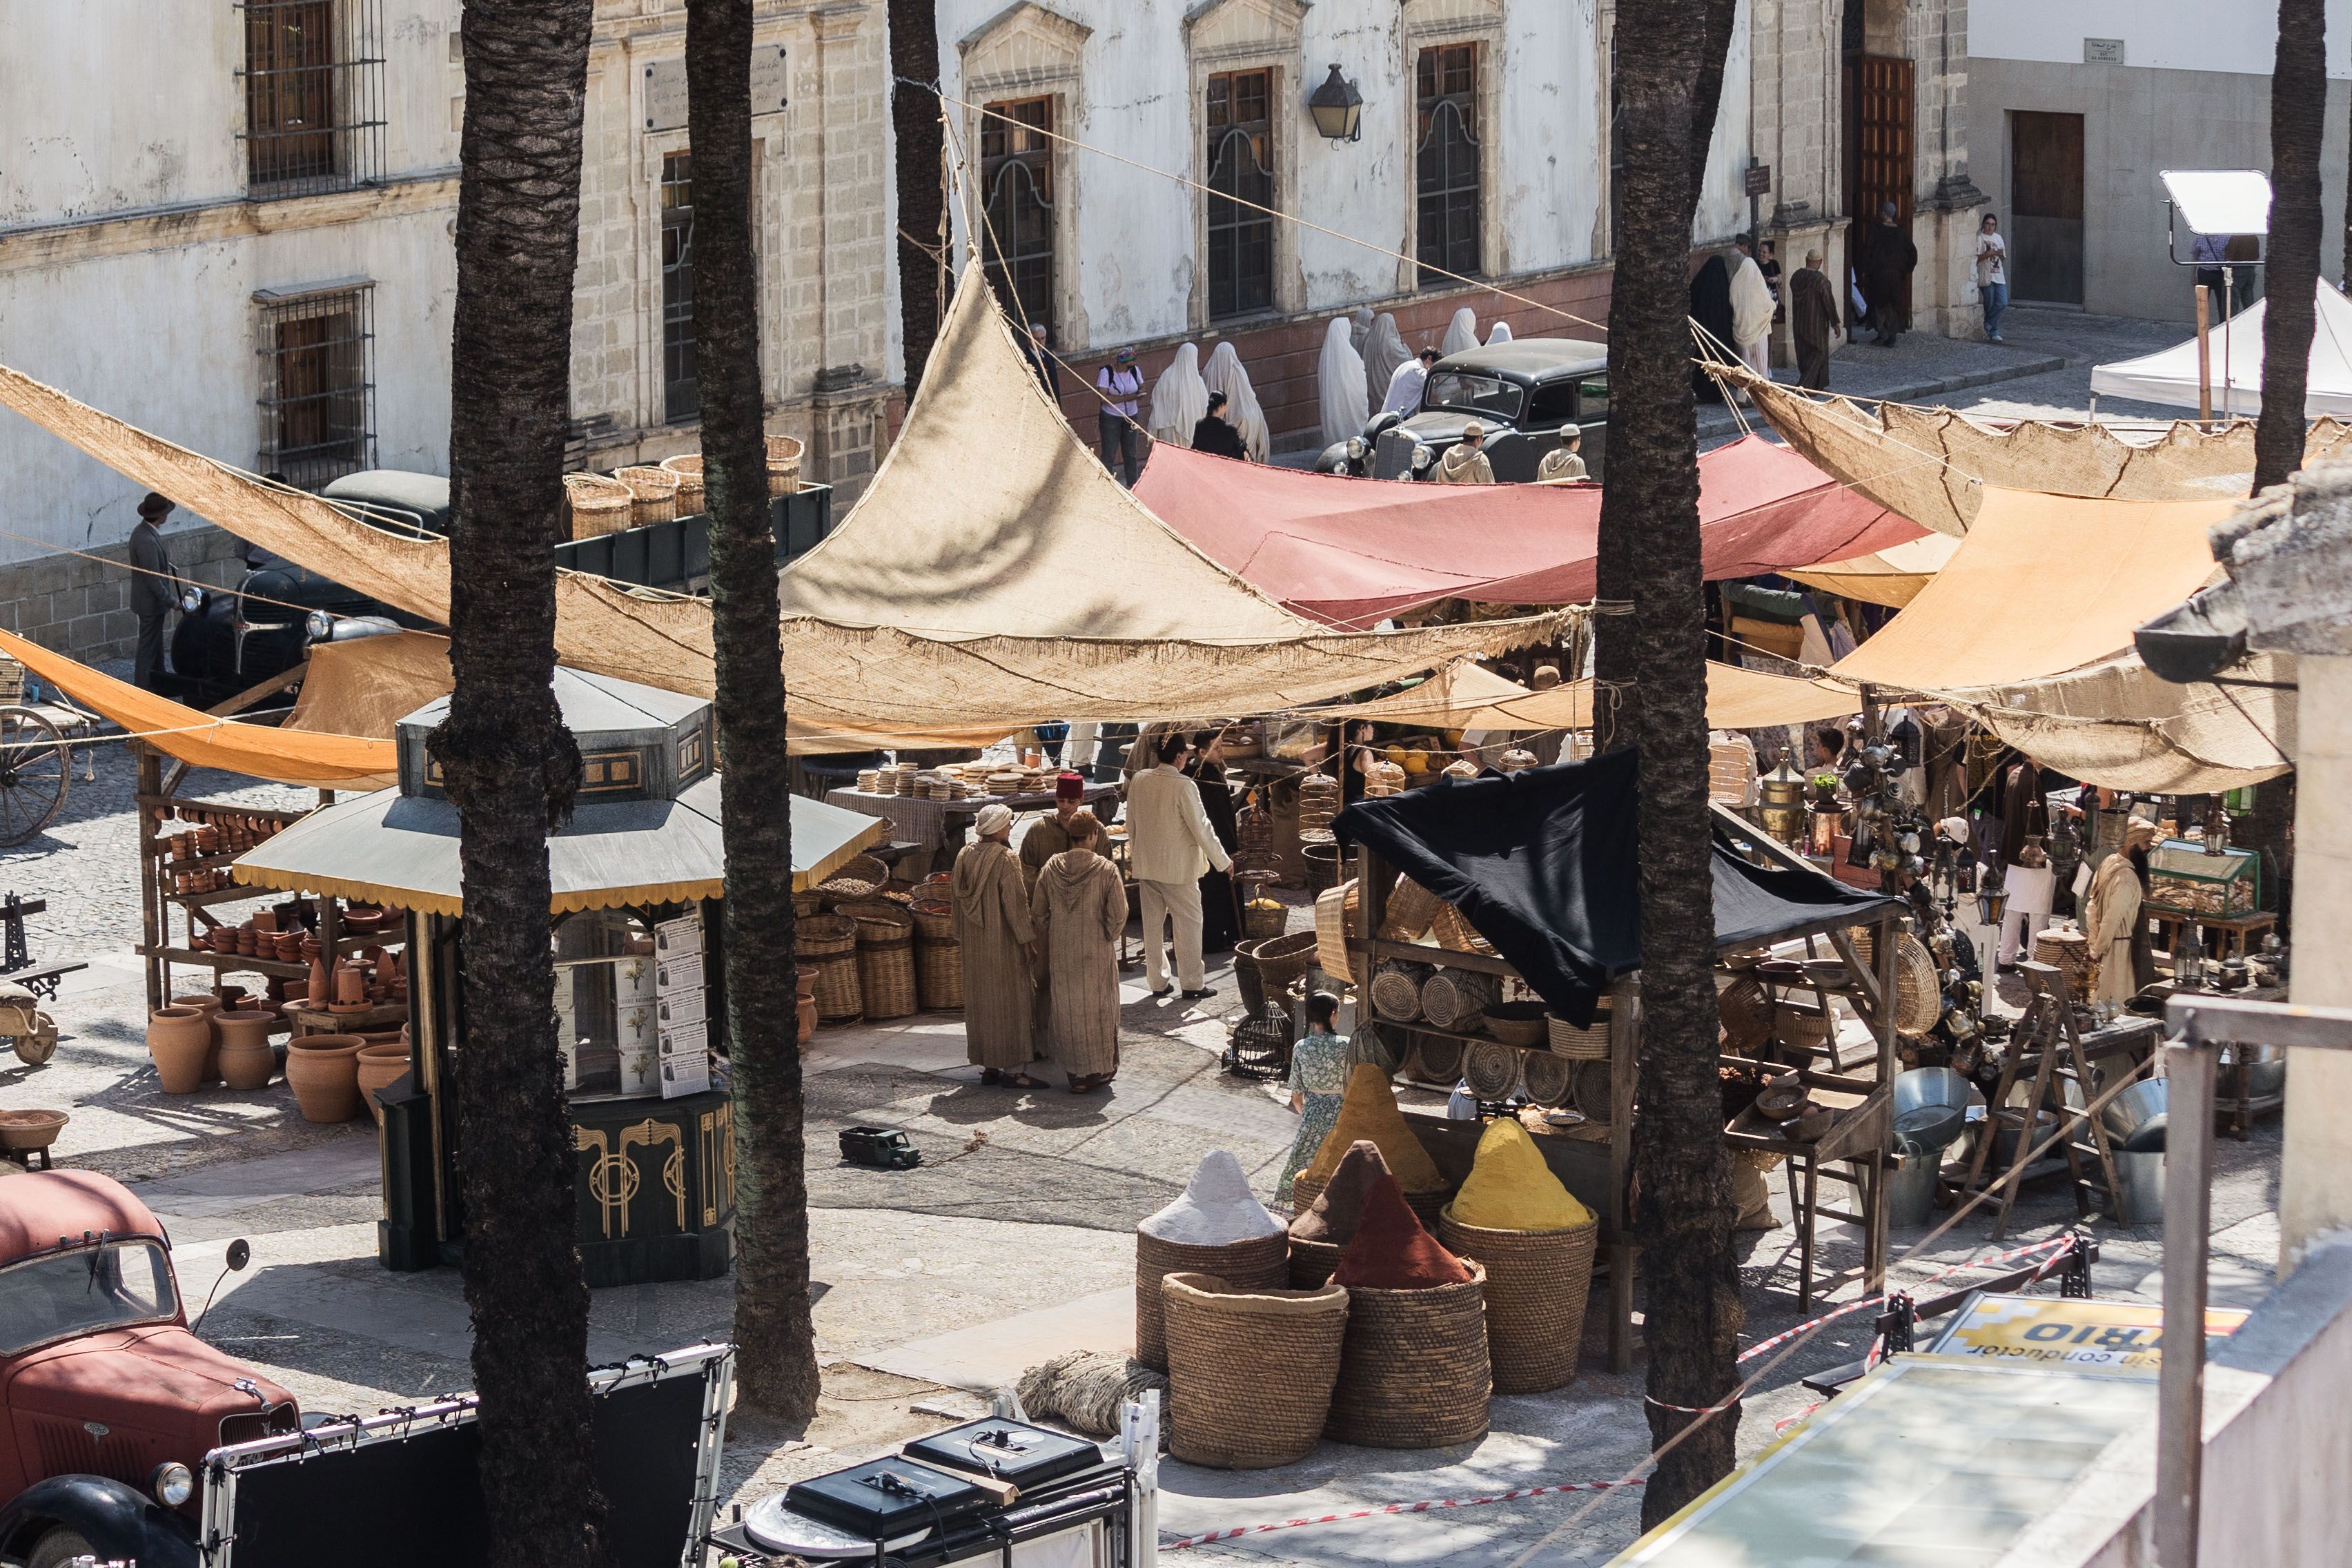 La plaza del mercado convertida en un mercado árabe en Casablanca.